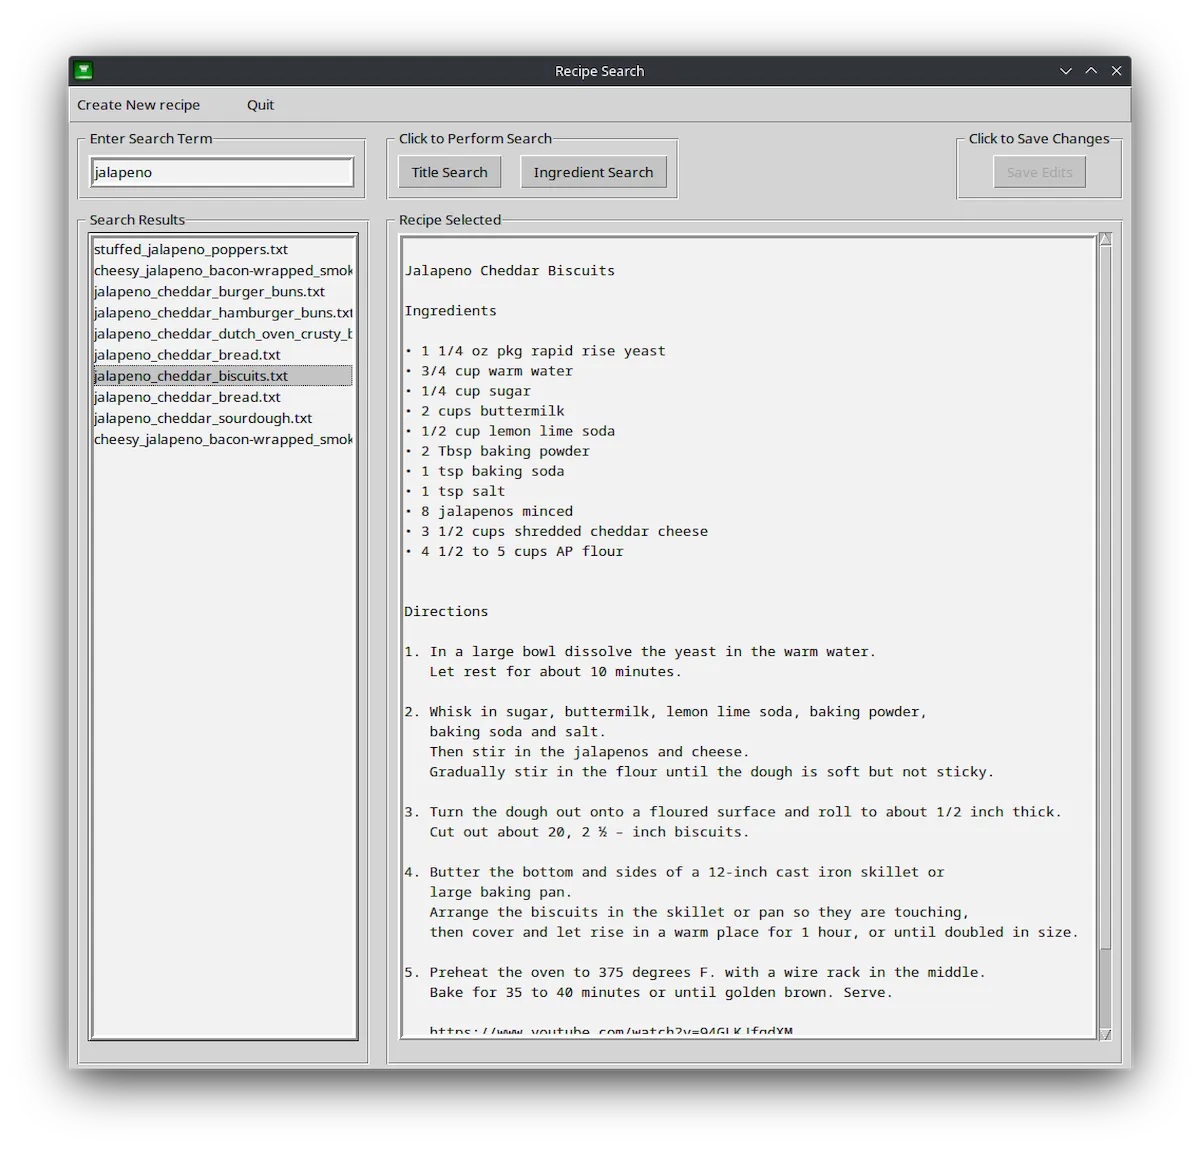 Como instalar o app de receitas recipescribe no Linux via Flatpak